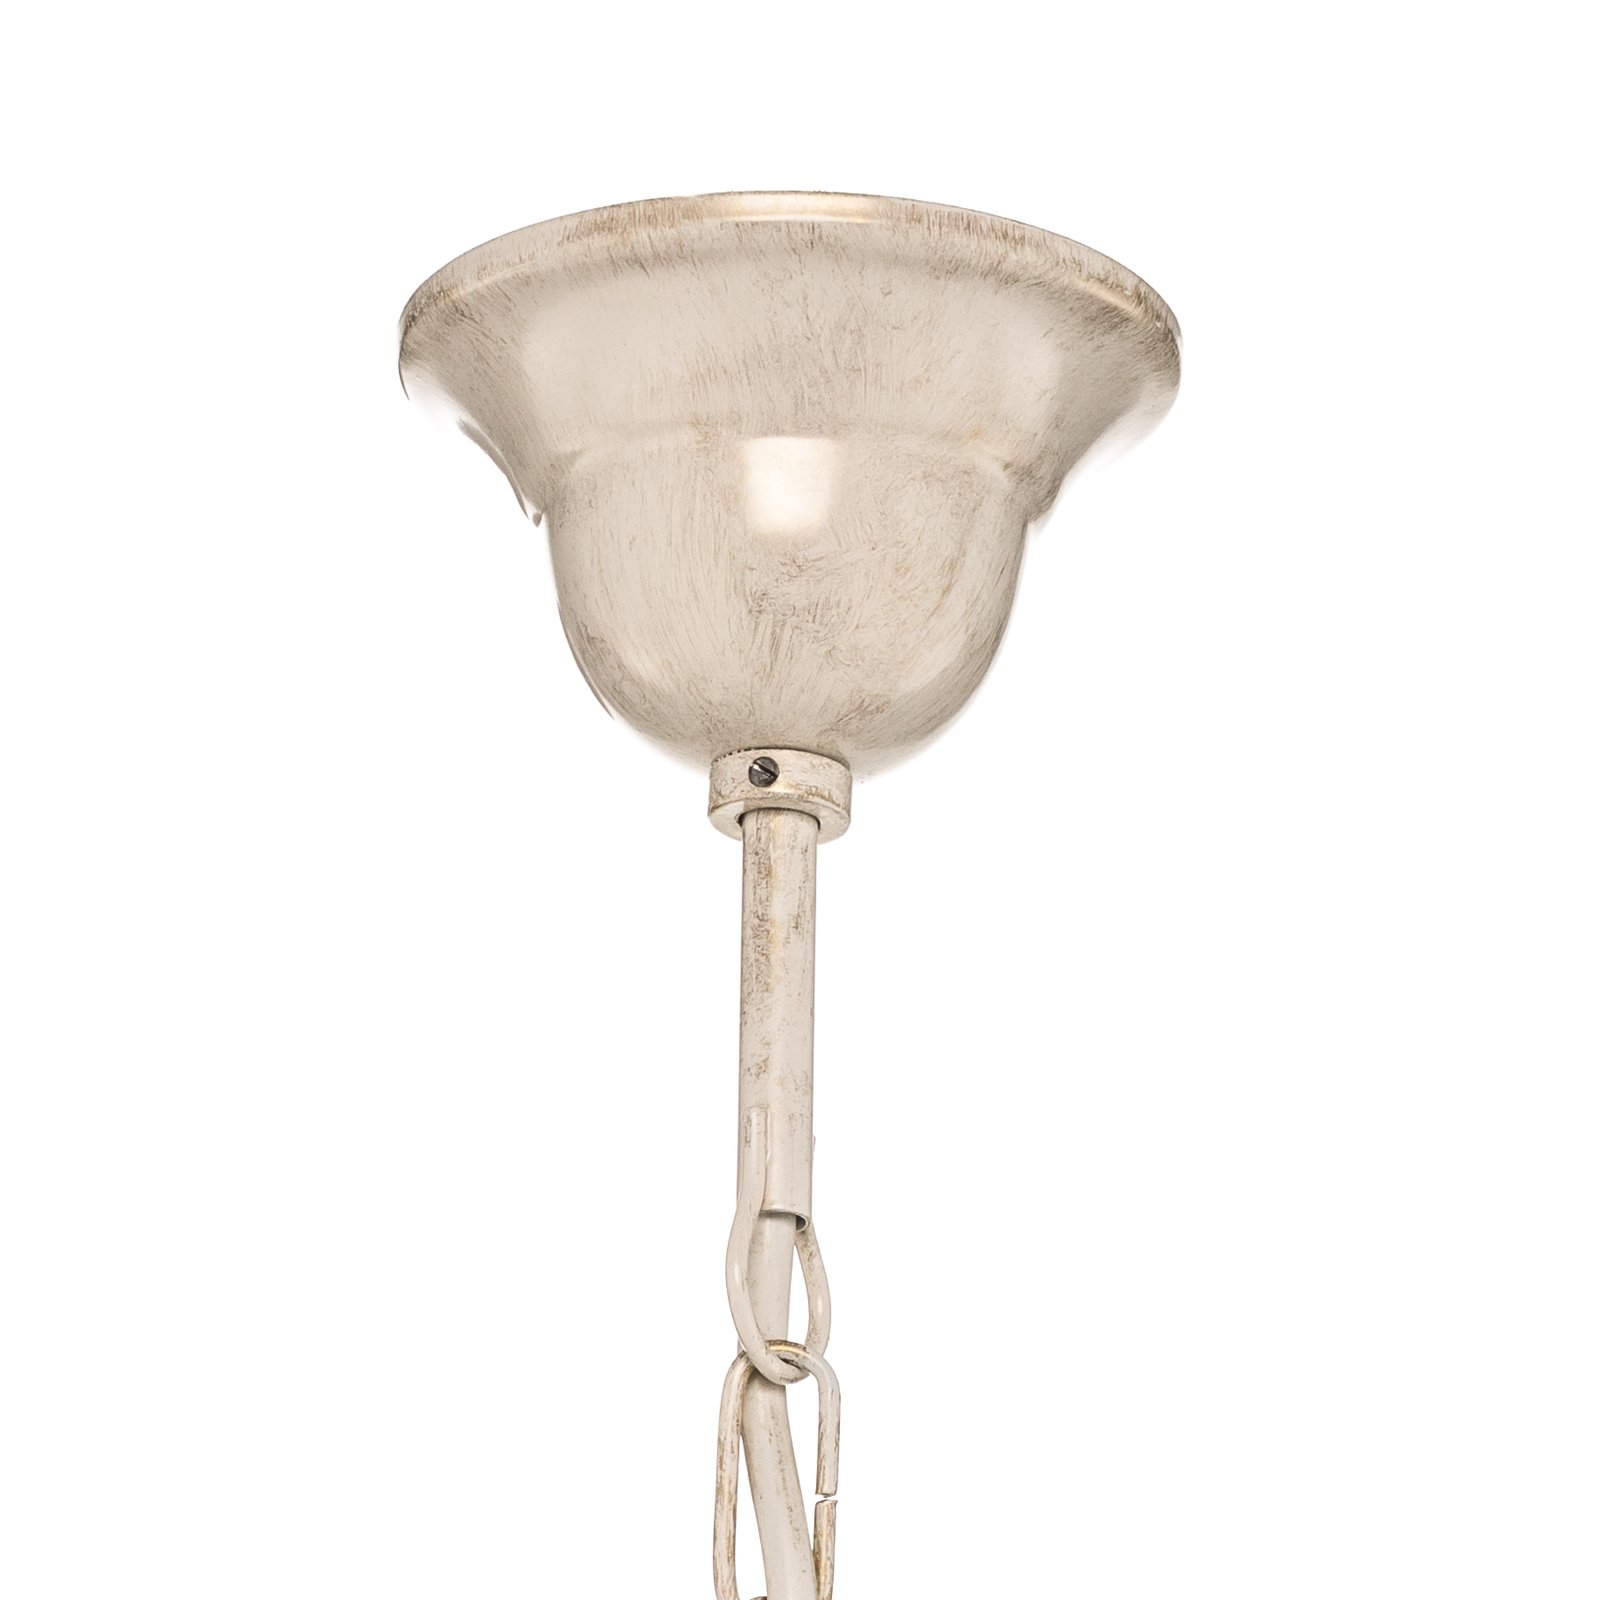 Ayleen chandelier made of steel, 10-bulb, white